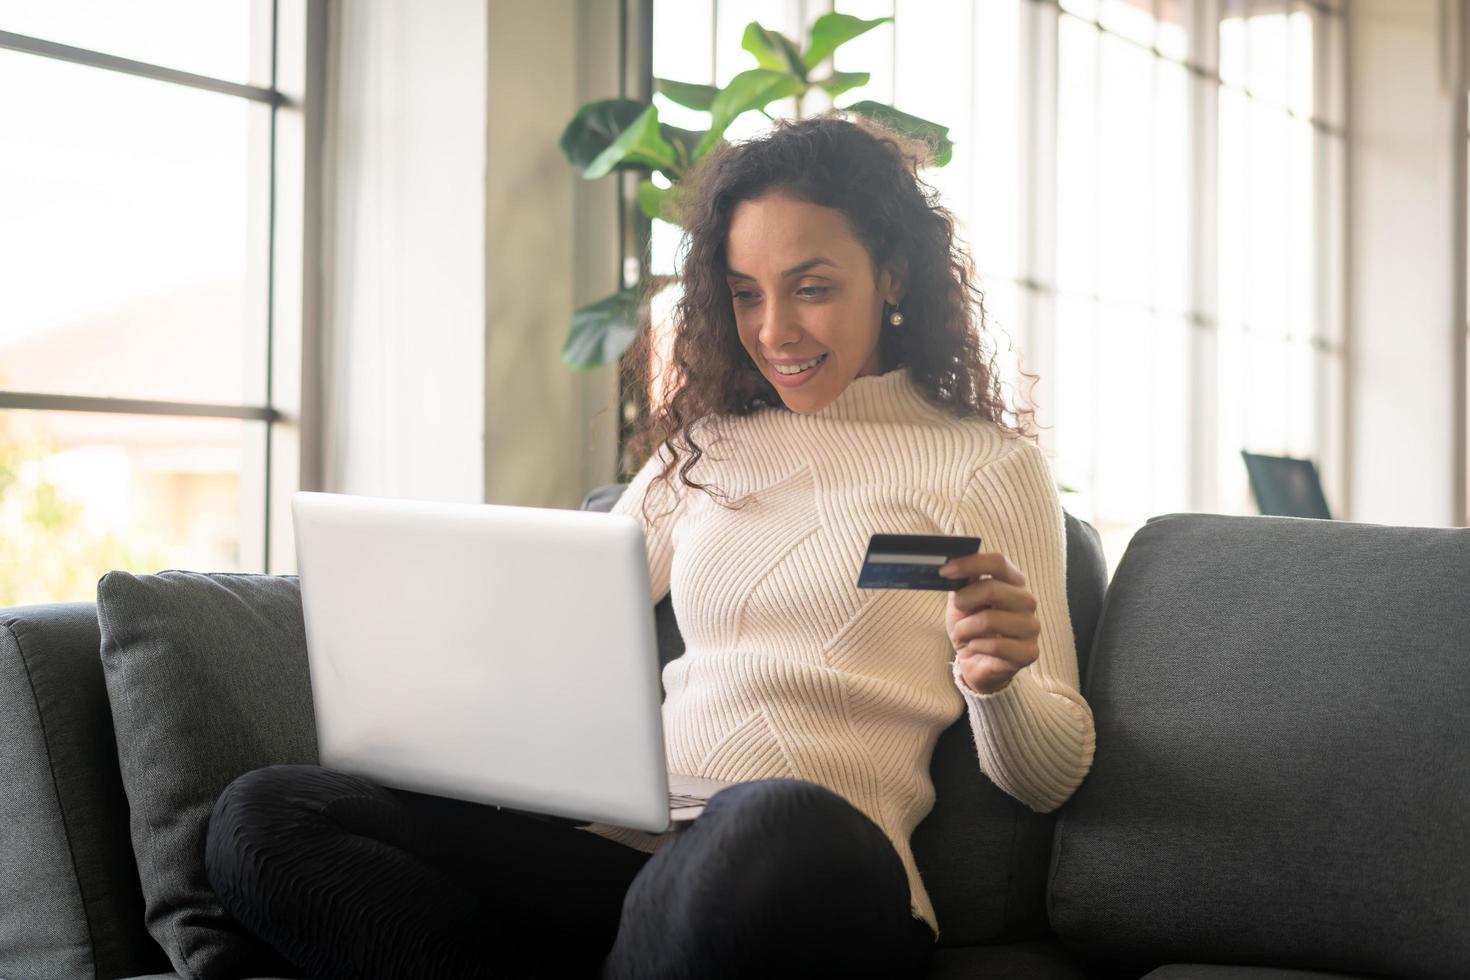 femme latine utilisant un ordinateur portable et une main tenant une carte de crédit pour faire du shopping sur un canapé photo